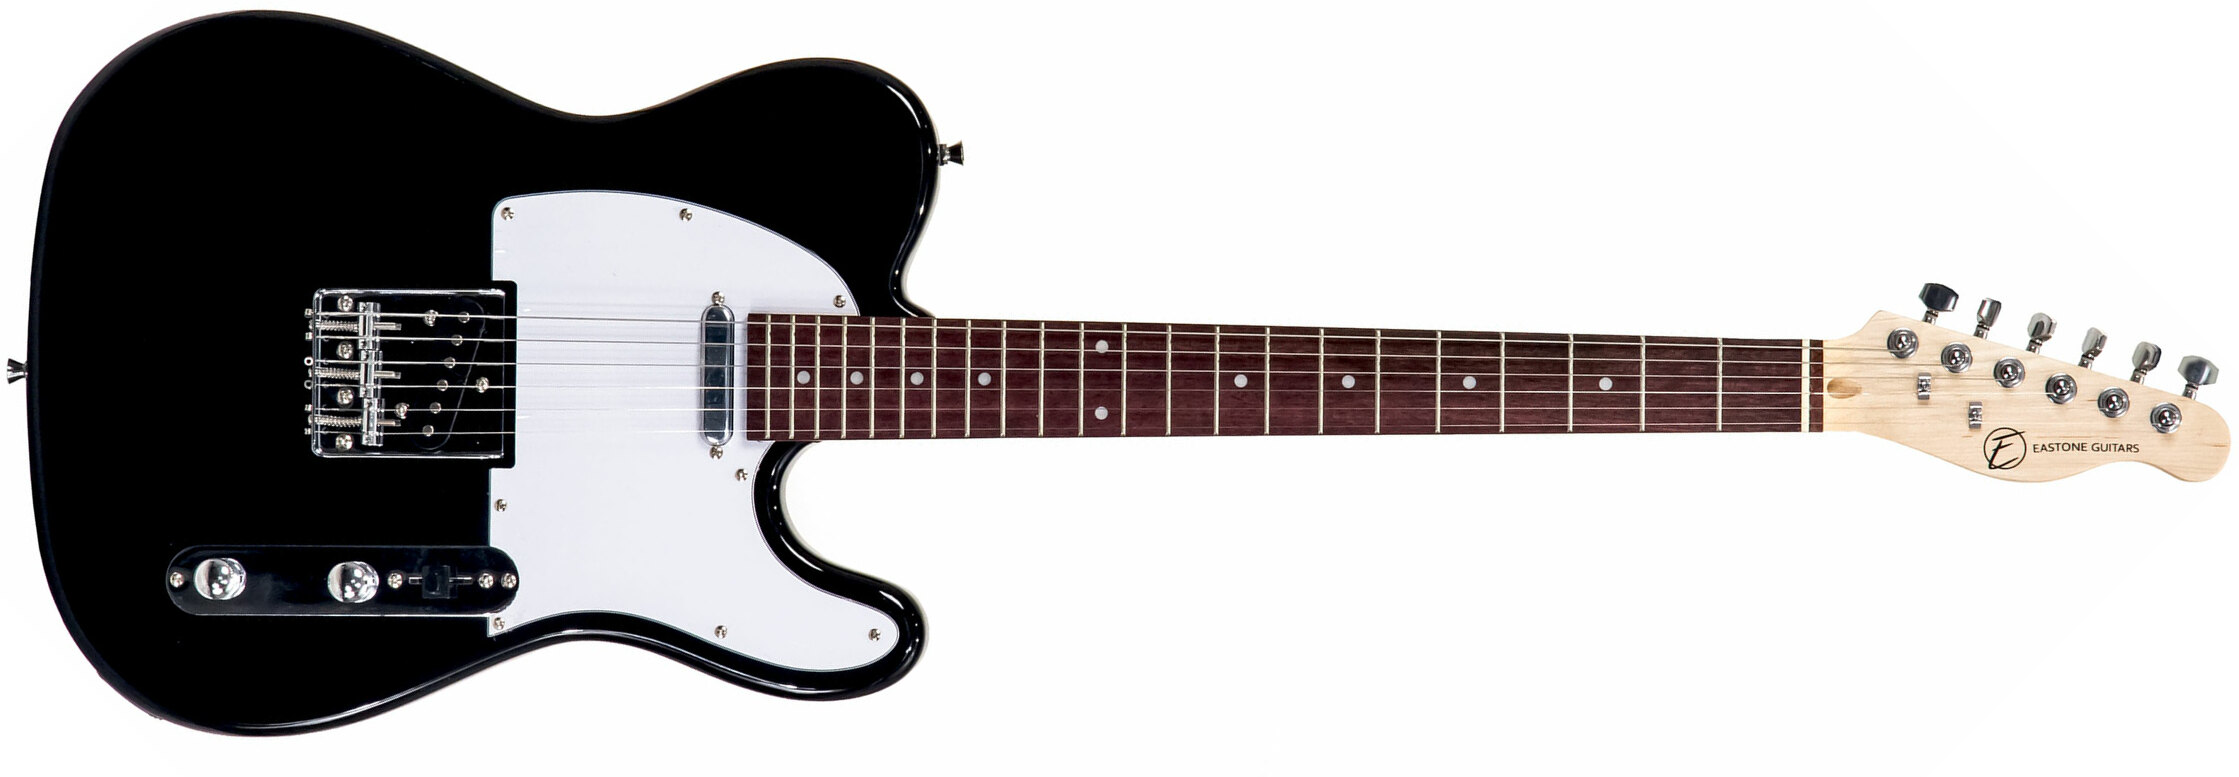 Eastone Tl70 Ss Ht Pur - Black - E-Gitarre in Teleform - Main picture